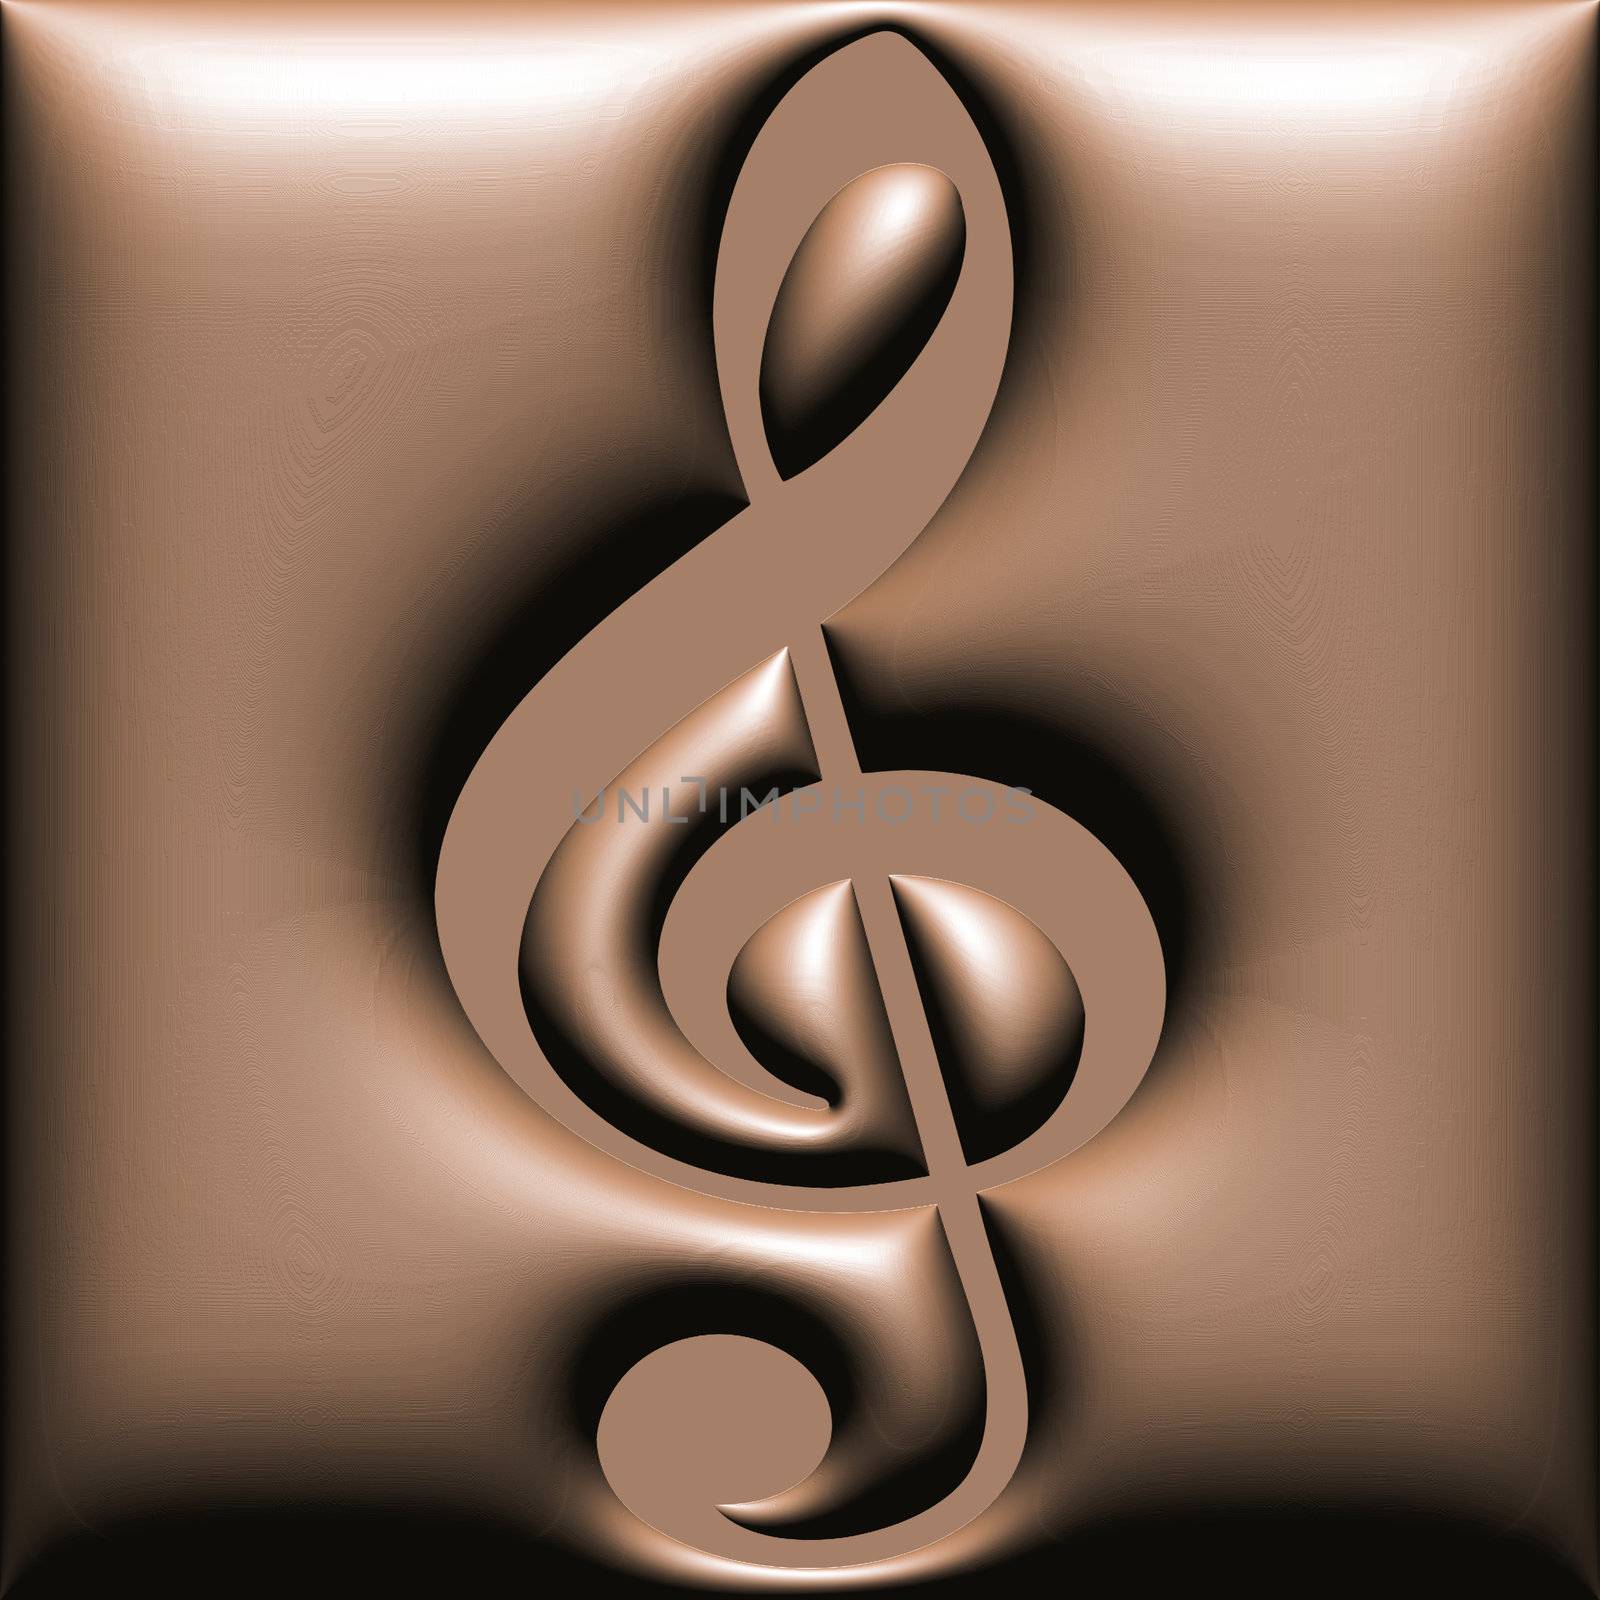 Chocolate treble clef by lifeinapixel